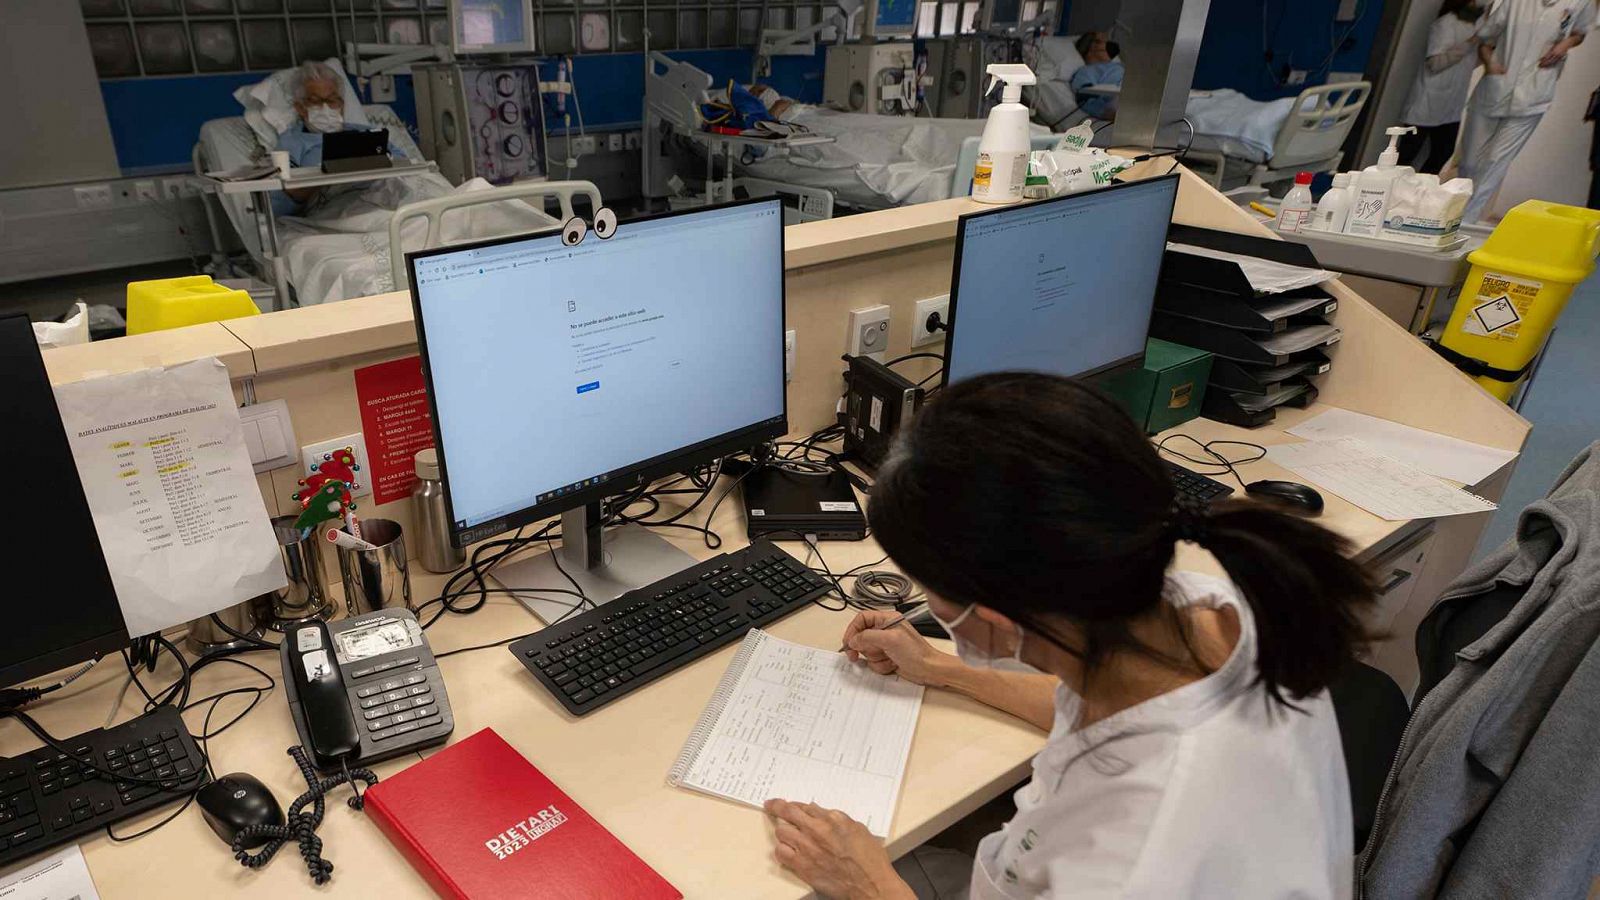 Una sanitaria del Hospital Clínic trabaja tomando notas a mano después del ciberataque.